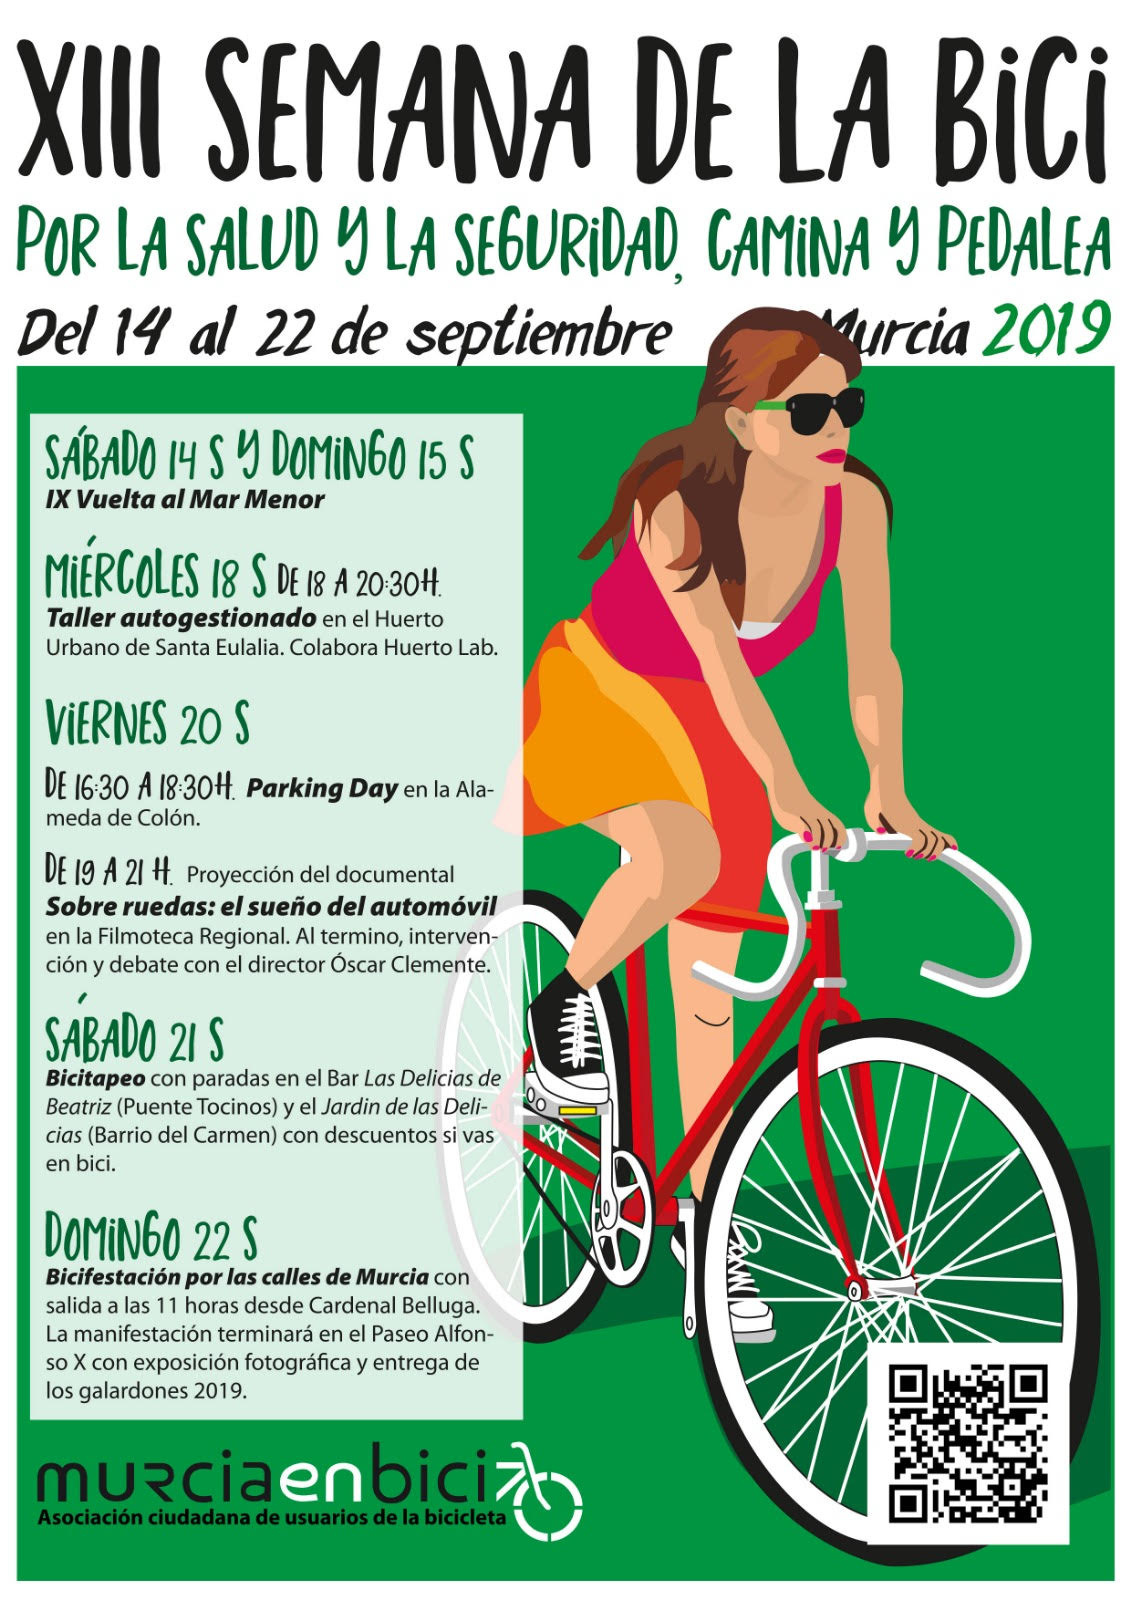 XIII Semana de la Bici de Murcia en bici